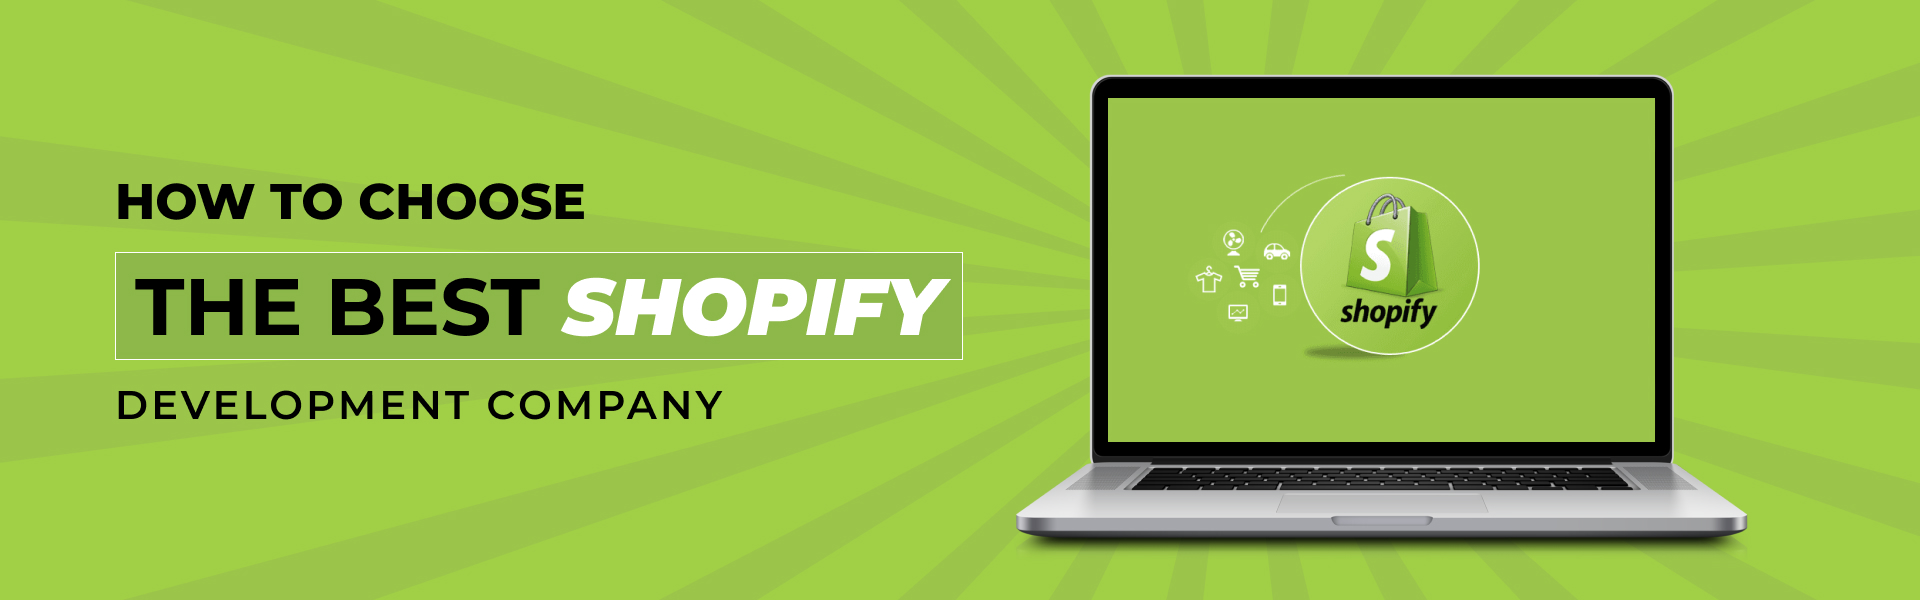 Best Shopify Development Company